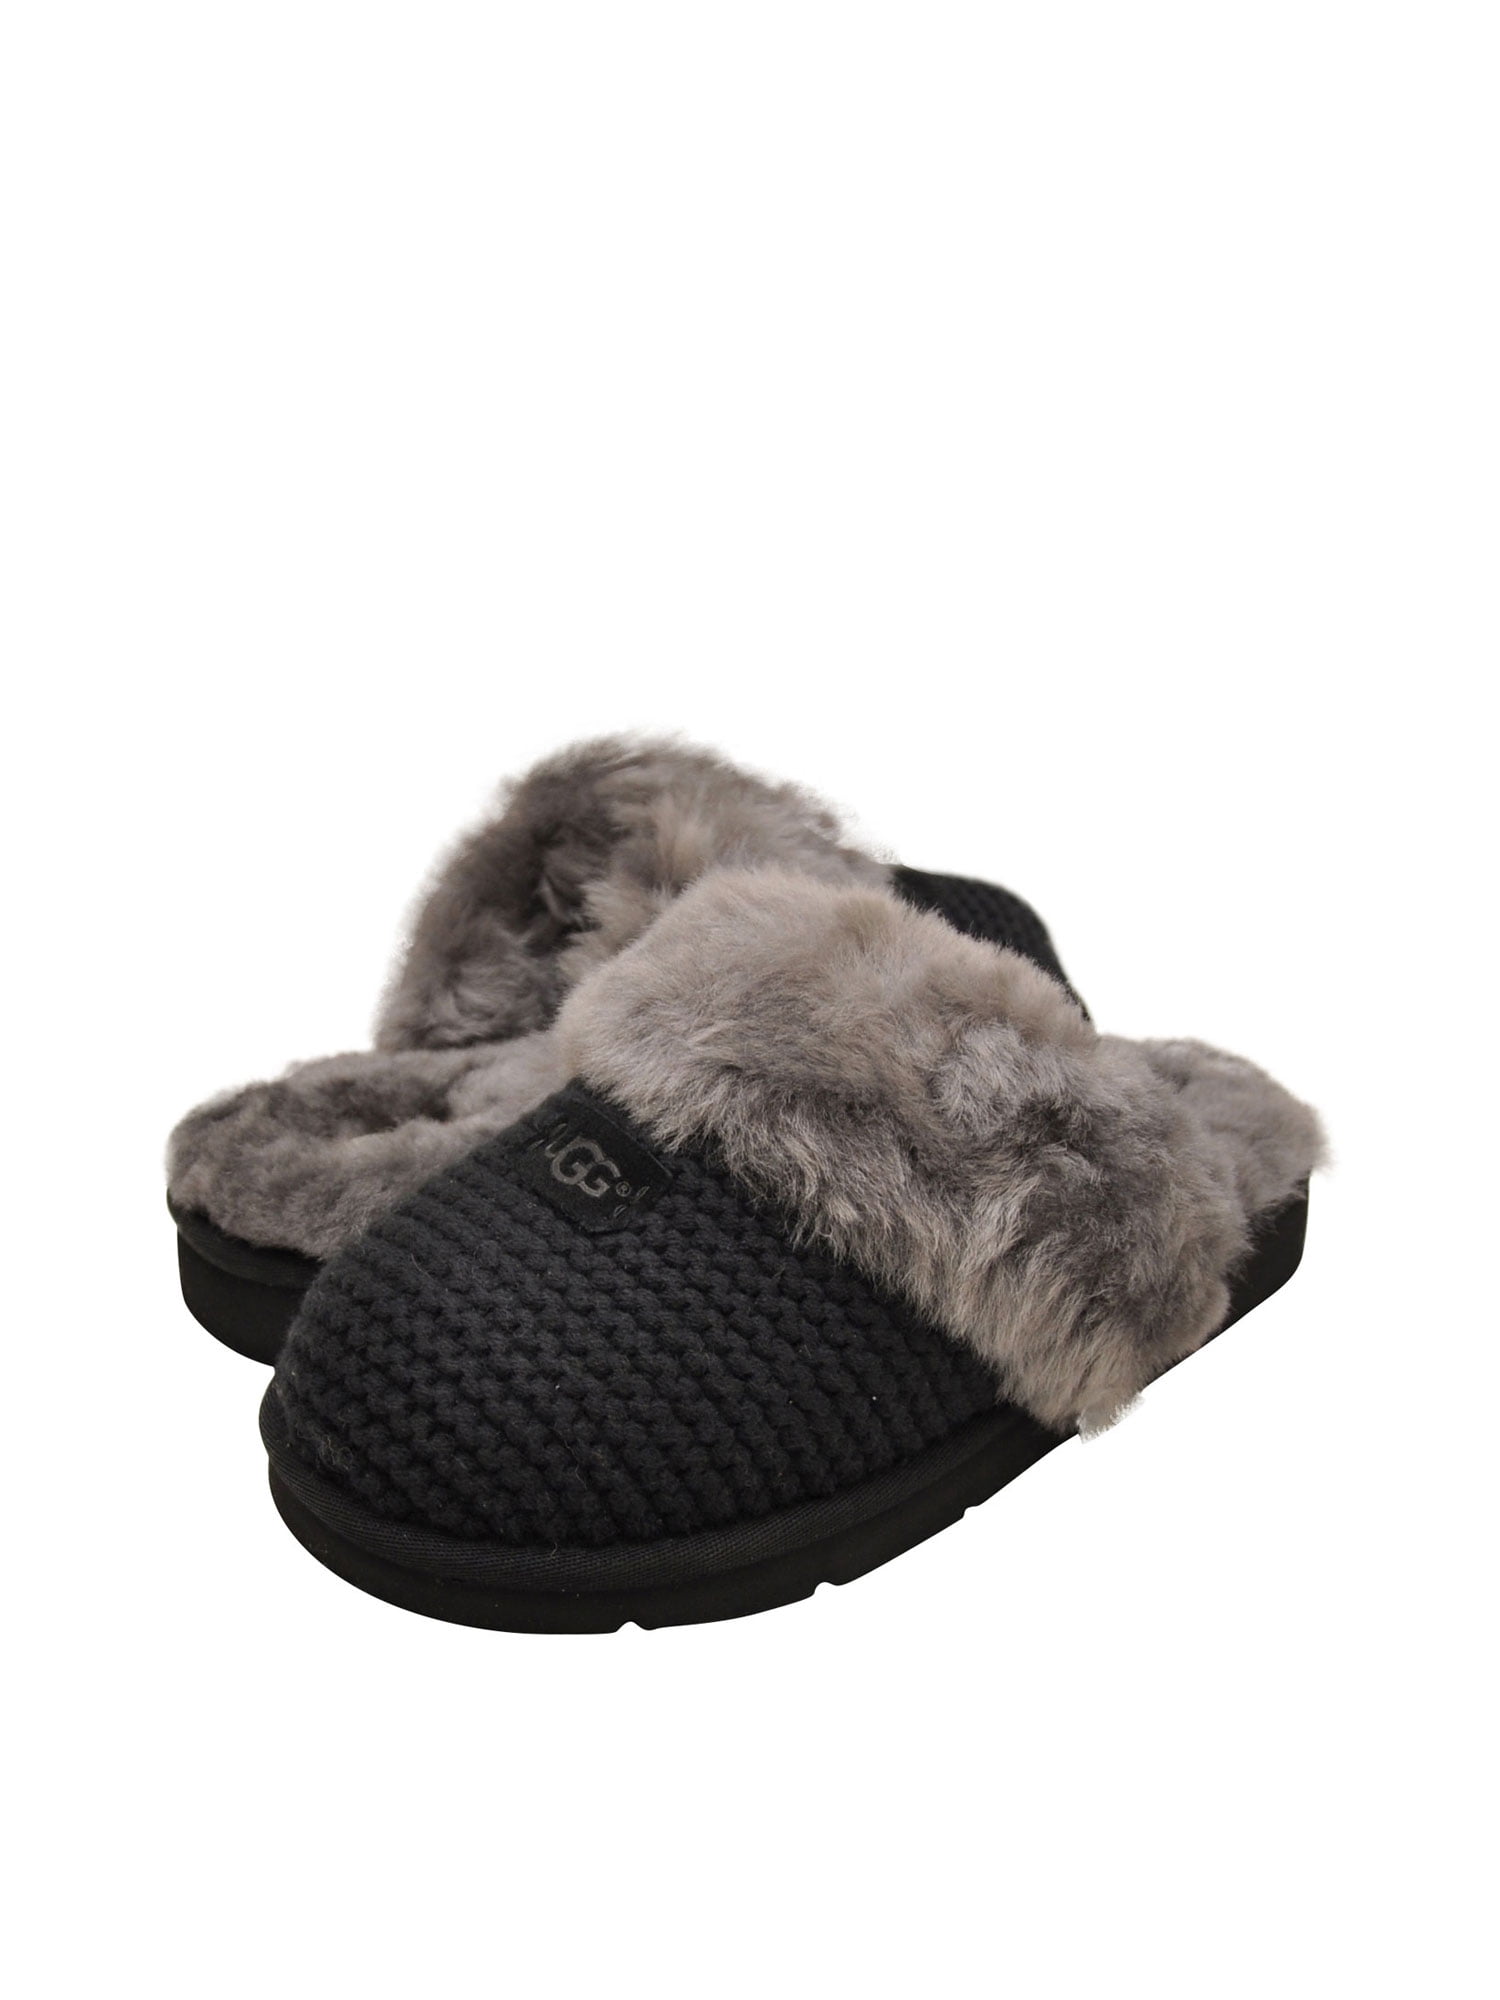 Buy > ugg cozy knit slipper > in stock